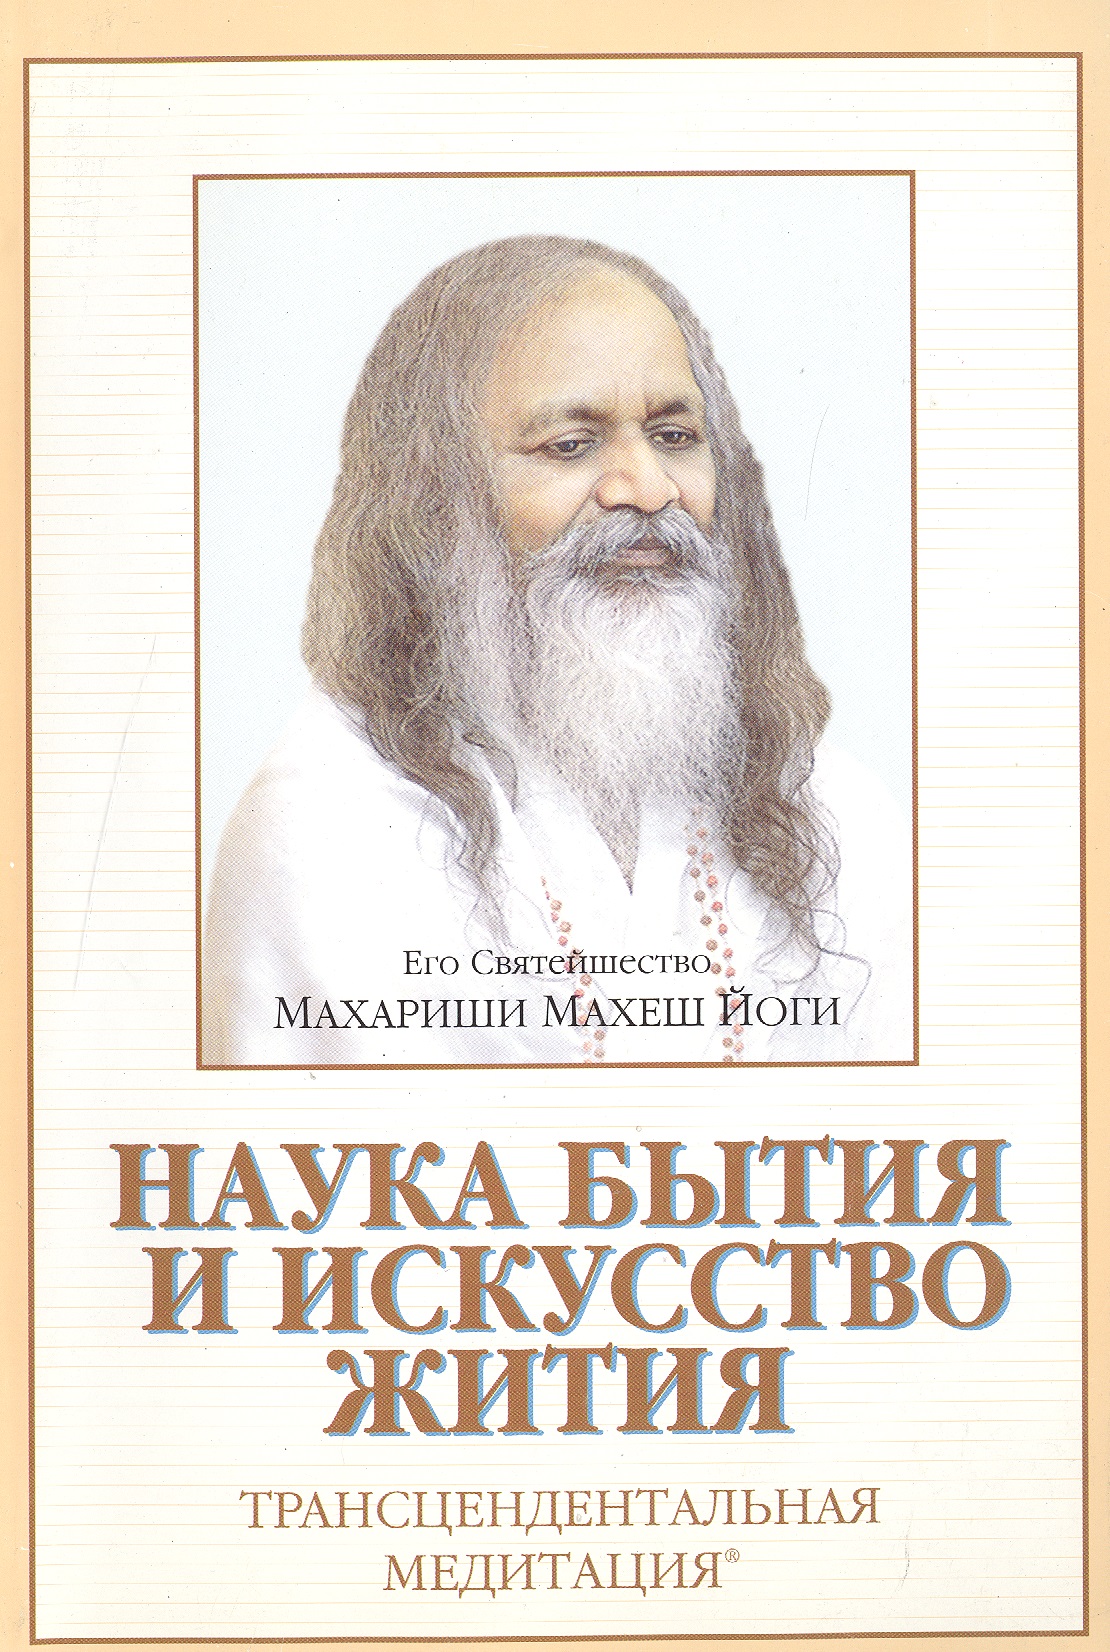 махариши махеш йоги трансцедентальная медитация в двух выпусках Махариши Махеш Йоги Наука бытия и искусство жития Трансцендентальная медитация (м)